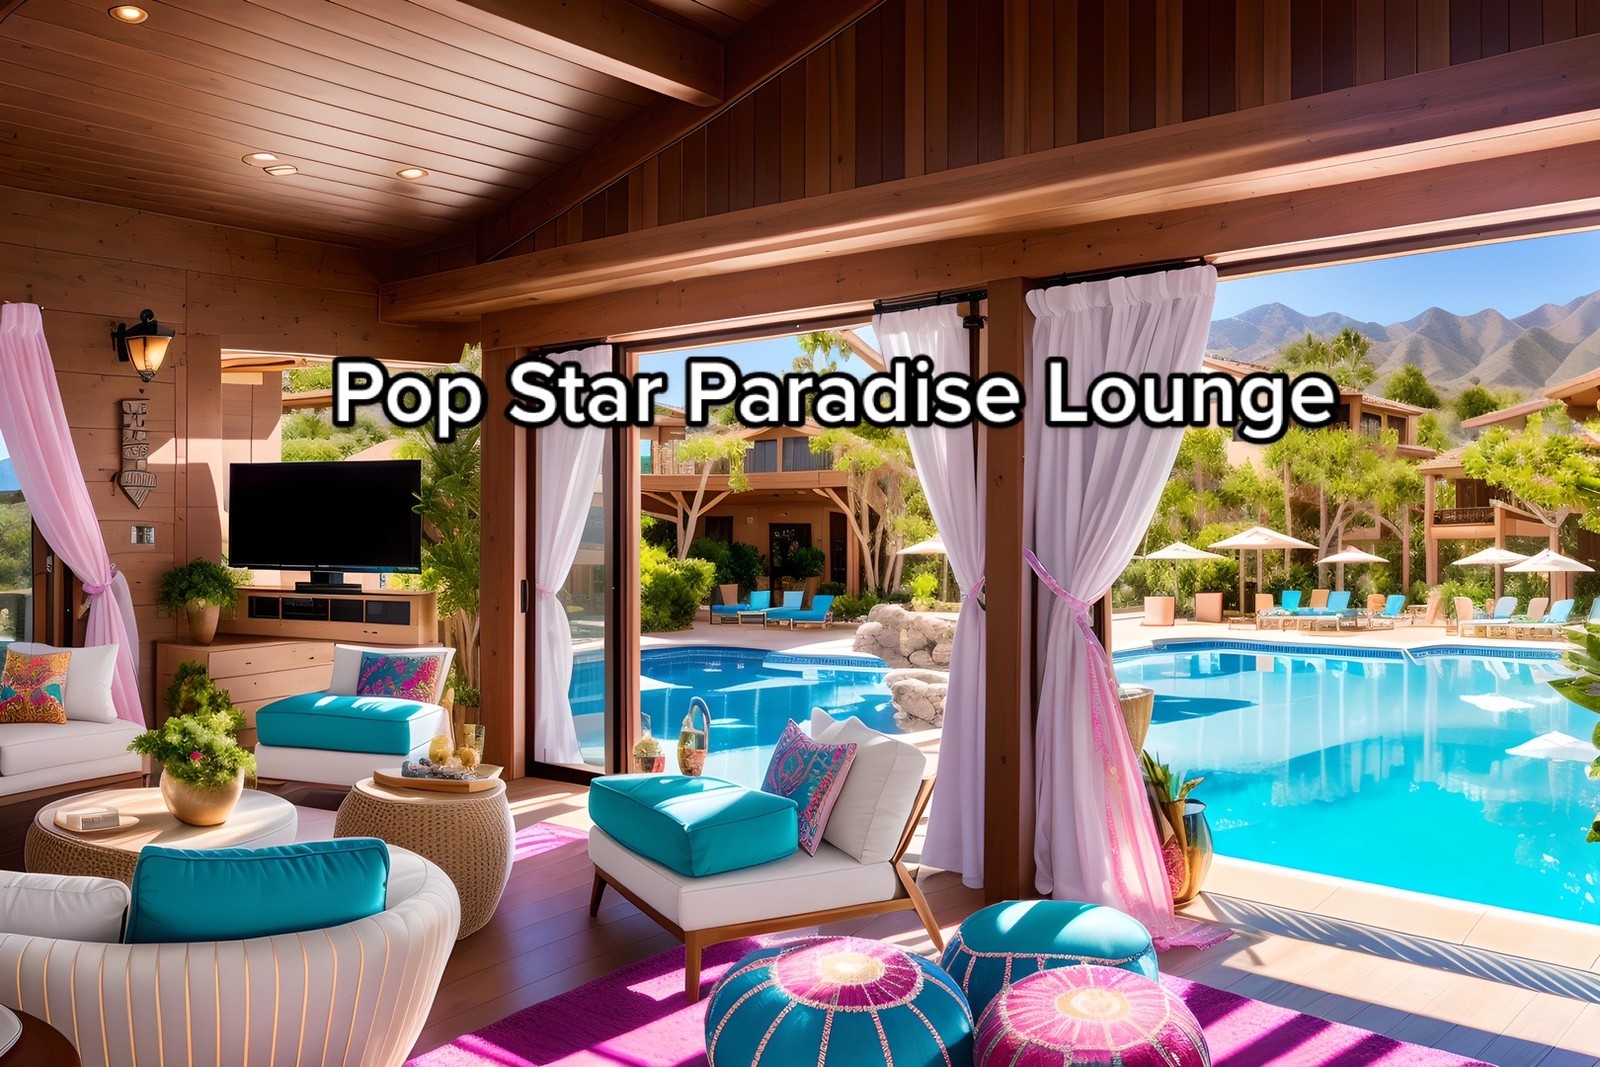 Lounge Paraíso Pop Star, em frente à piscina, do resort inspirado em Hannah Montana — Foto: aipresence / TikTok / Reprodução